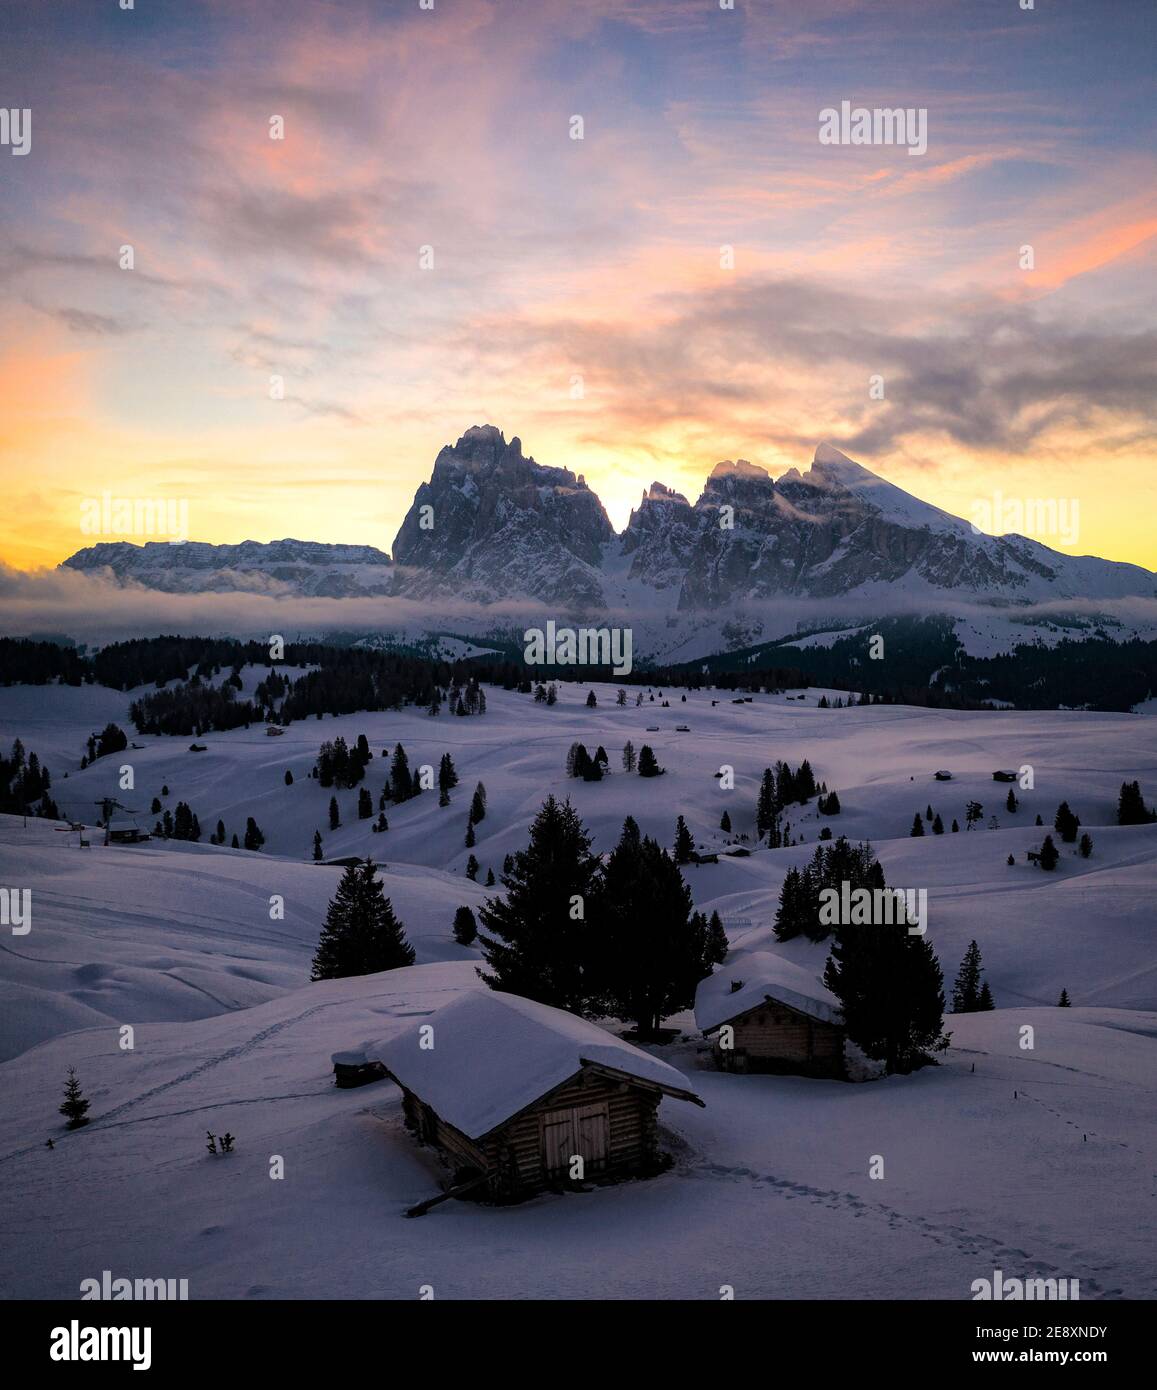 Chalet in legno coperto di neve all'alba con Sassolopiatto e Sassolungo sullo sfondo, Alpe di Siusi, Dolomiti, Alto Adige, Italia Foto Stock